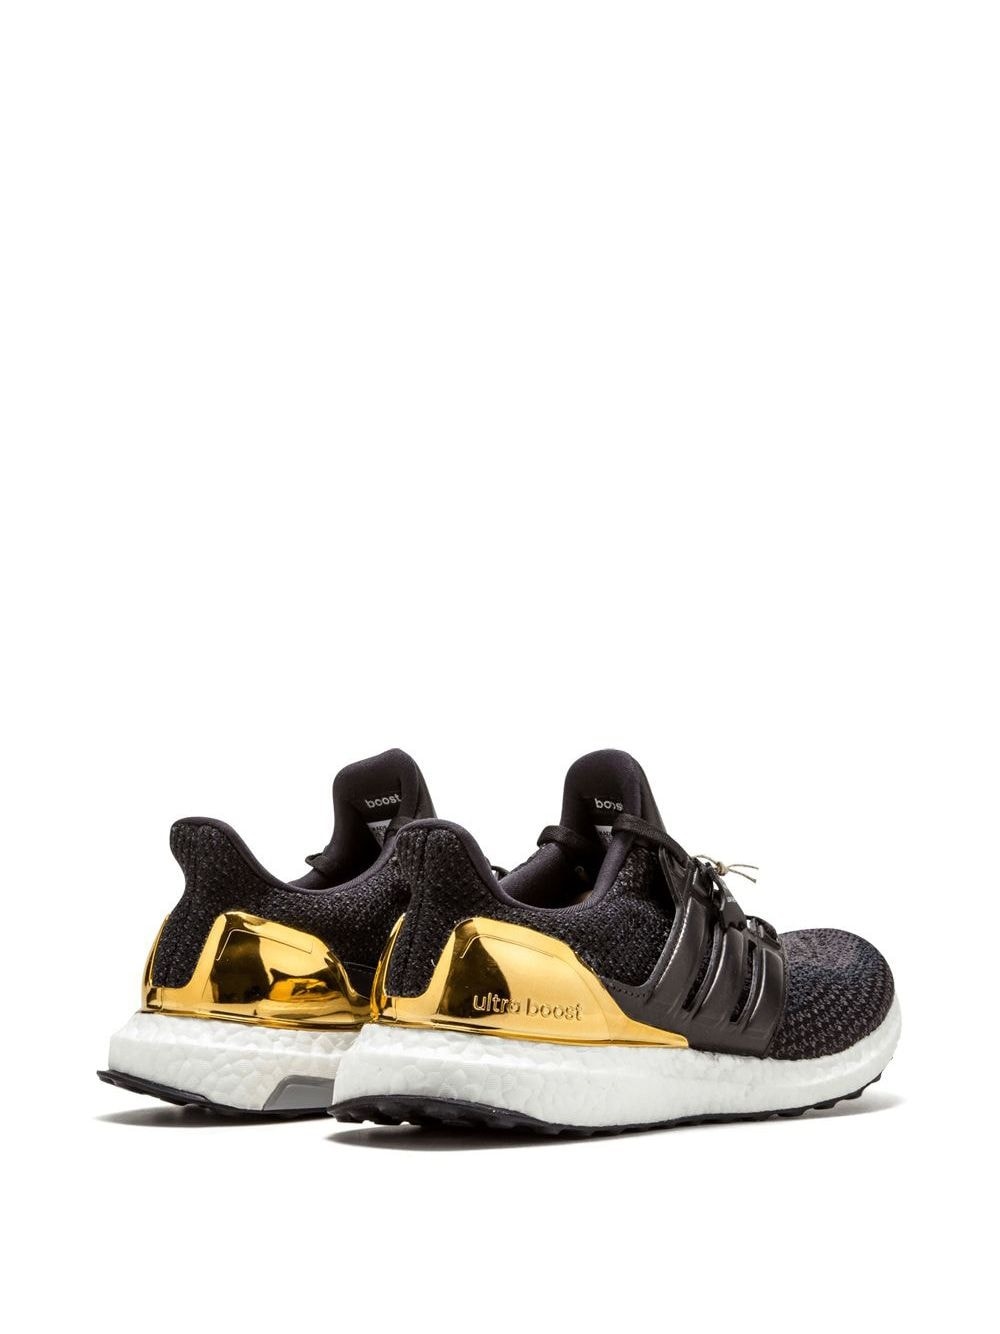 Ultraboost LTD "Gold Medal" sneakers - 3